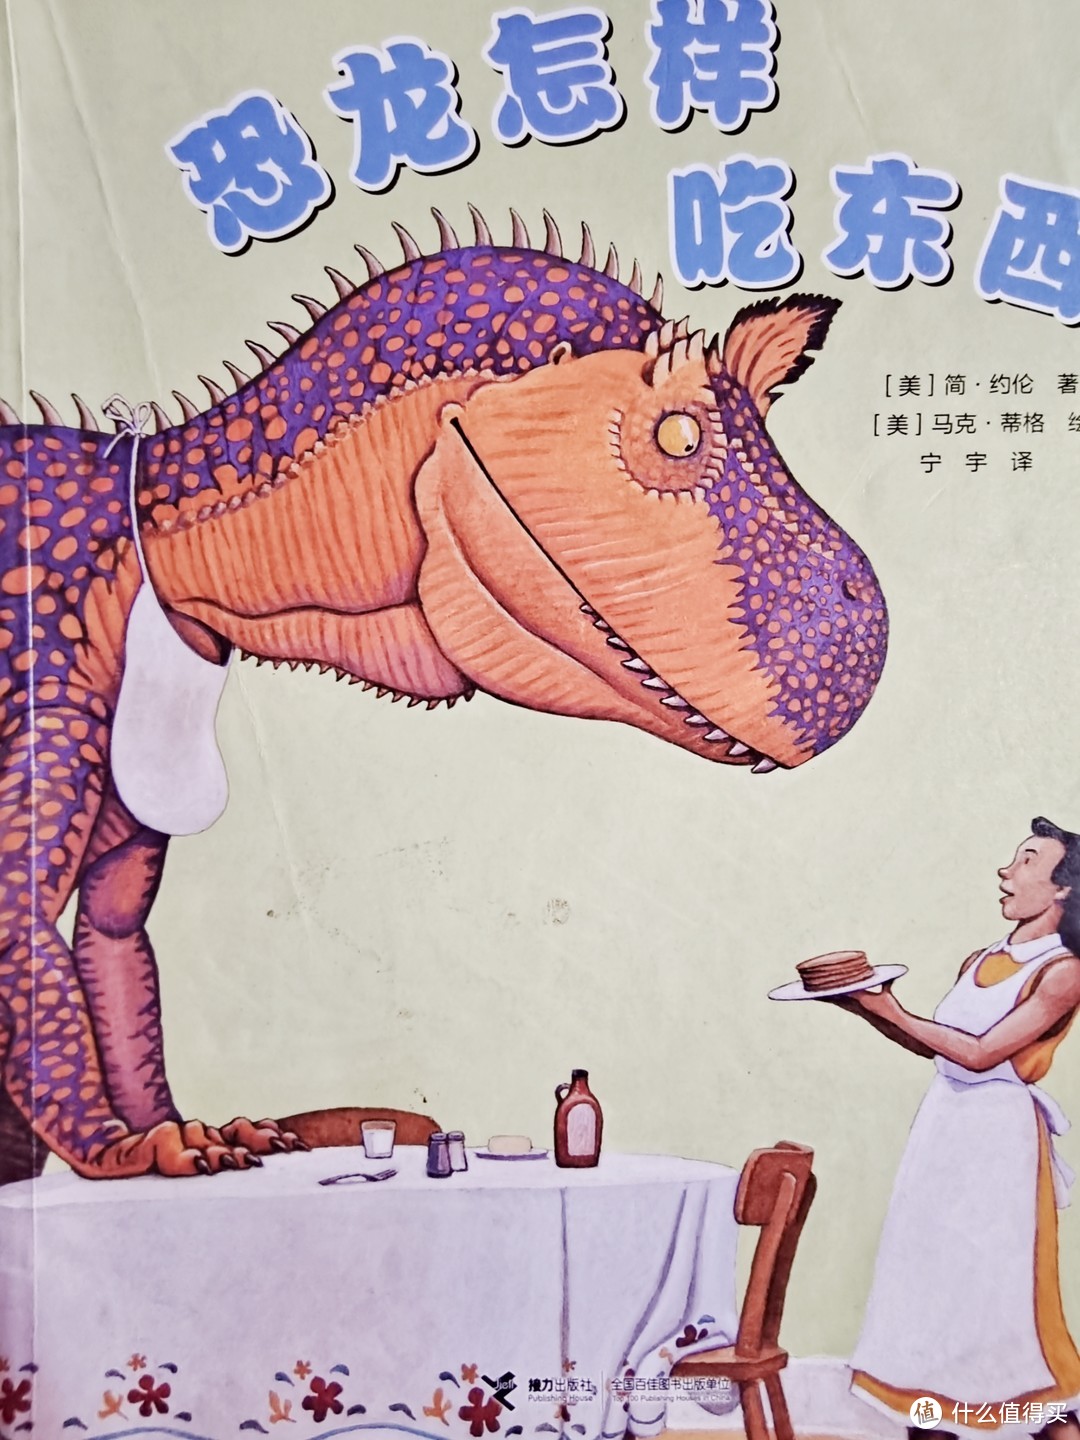 恐龙怎样吃东西